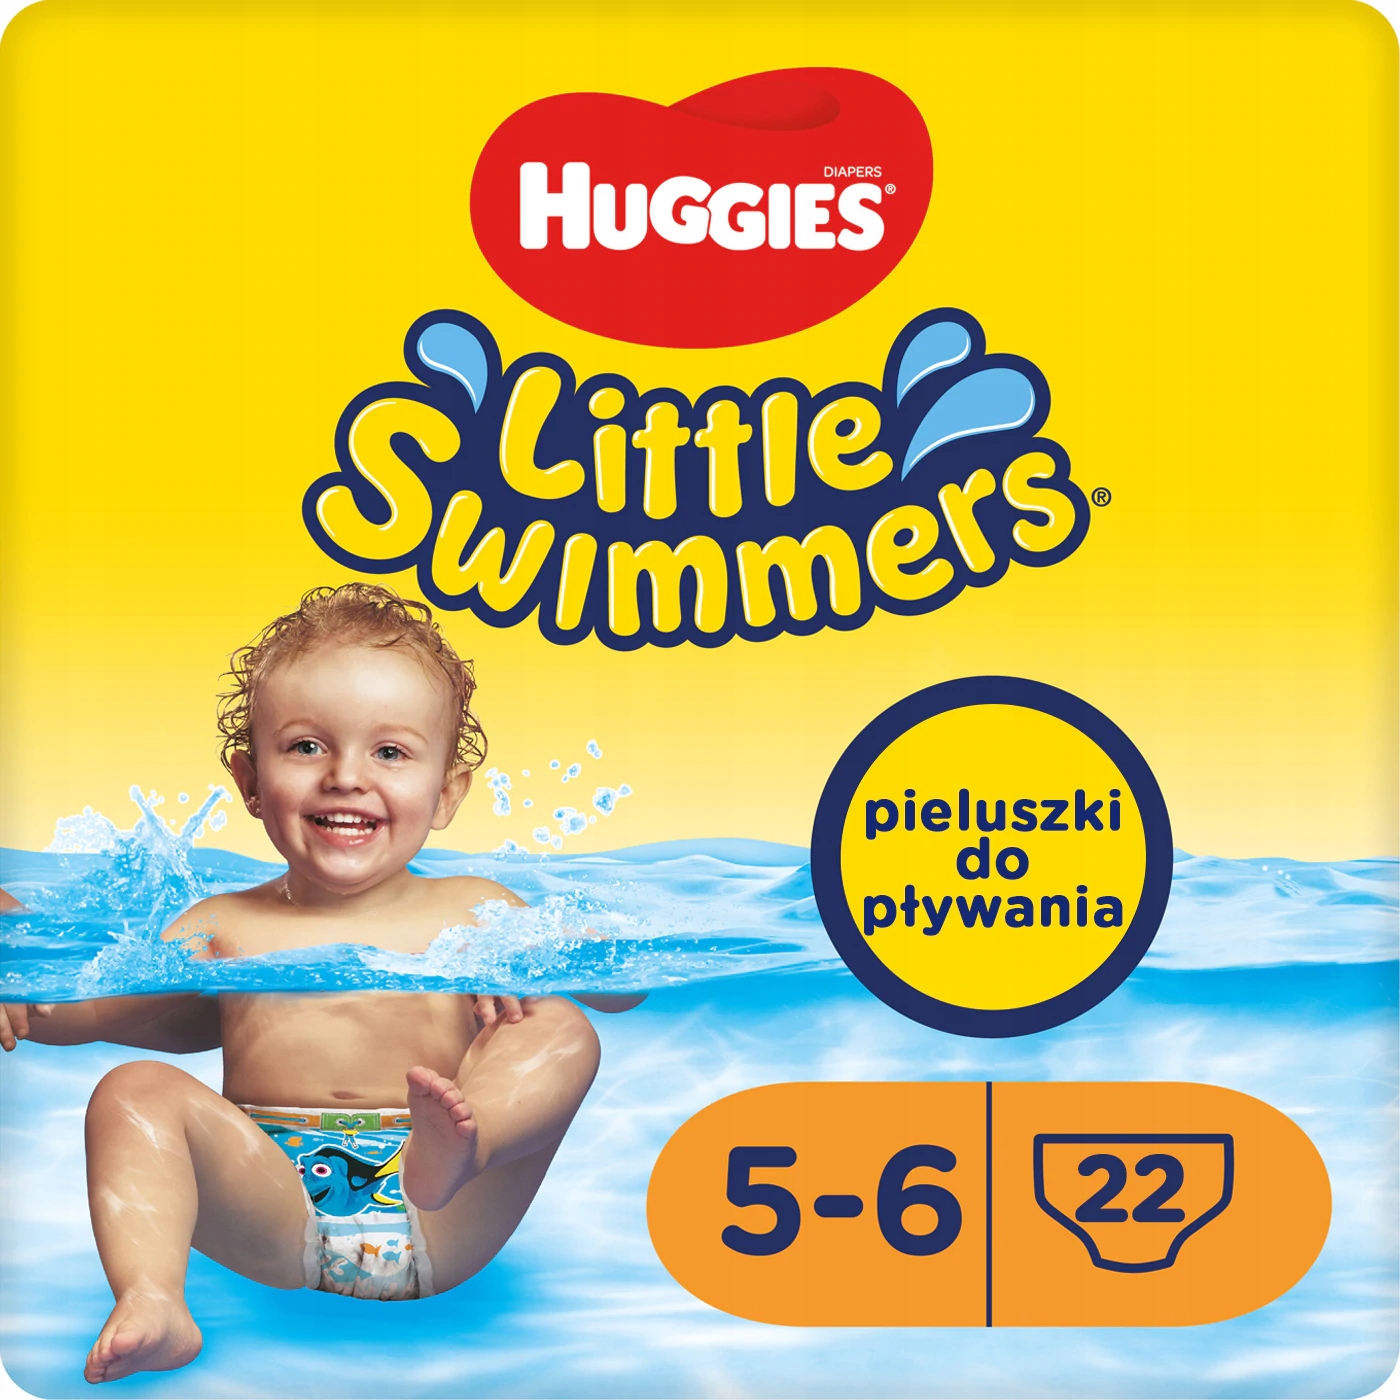 huggies little swimmers 5-6 allegro